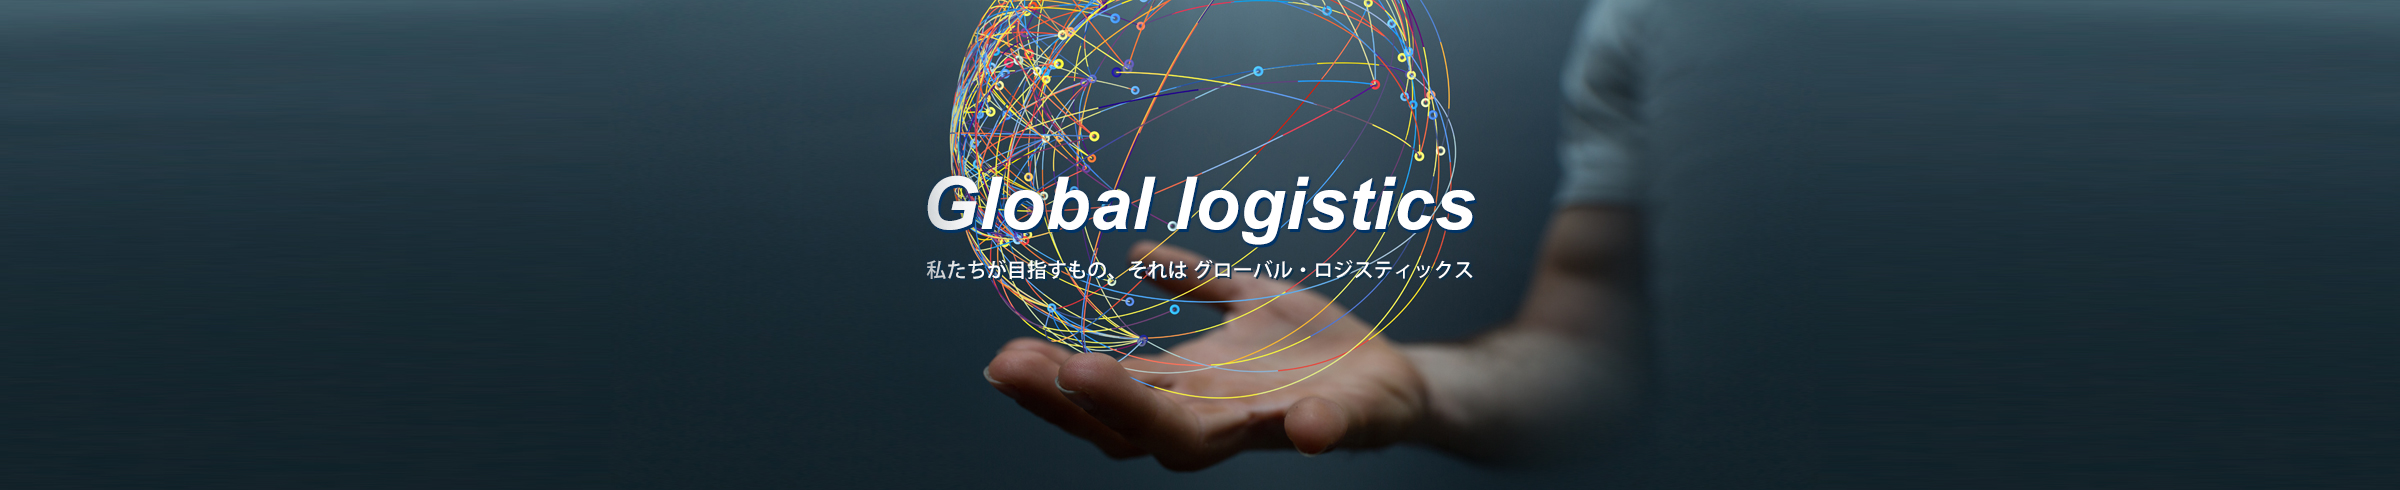 Global logistics 私たちが目指すもの、それは グローバル・ロジスティックス